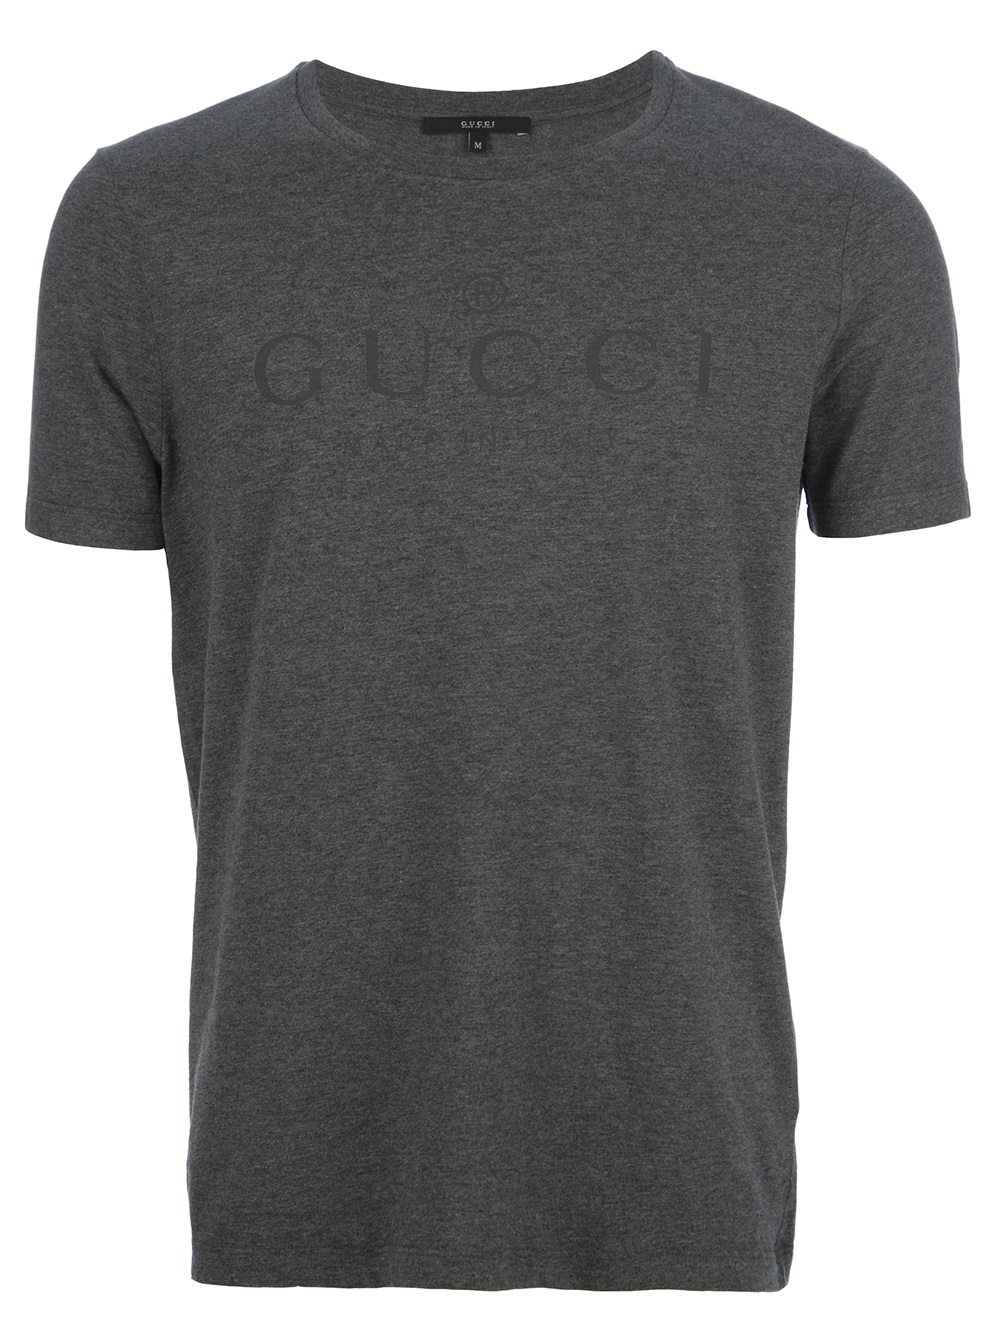 Gucci Logo Print Tshirt in Grey (Gray) for Men - Lyst